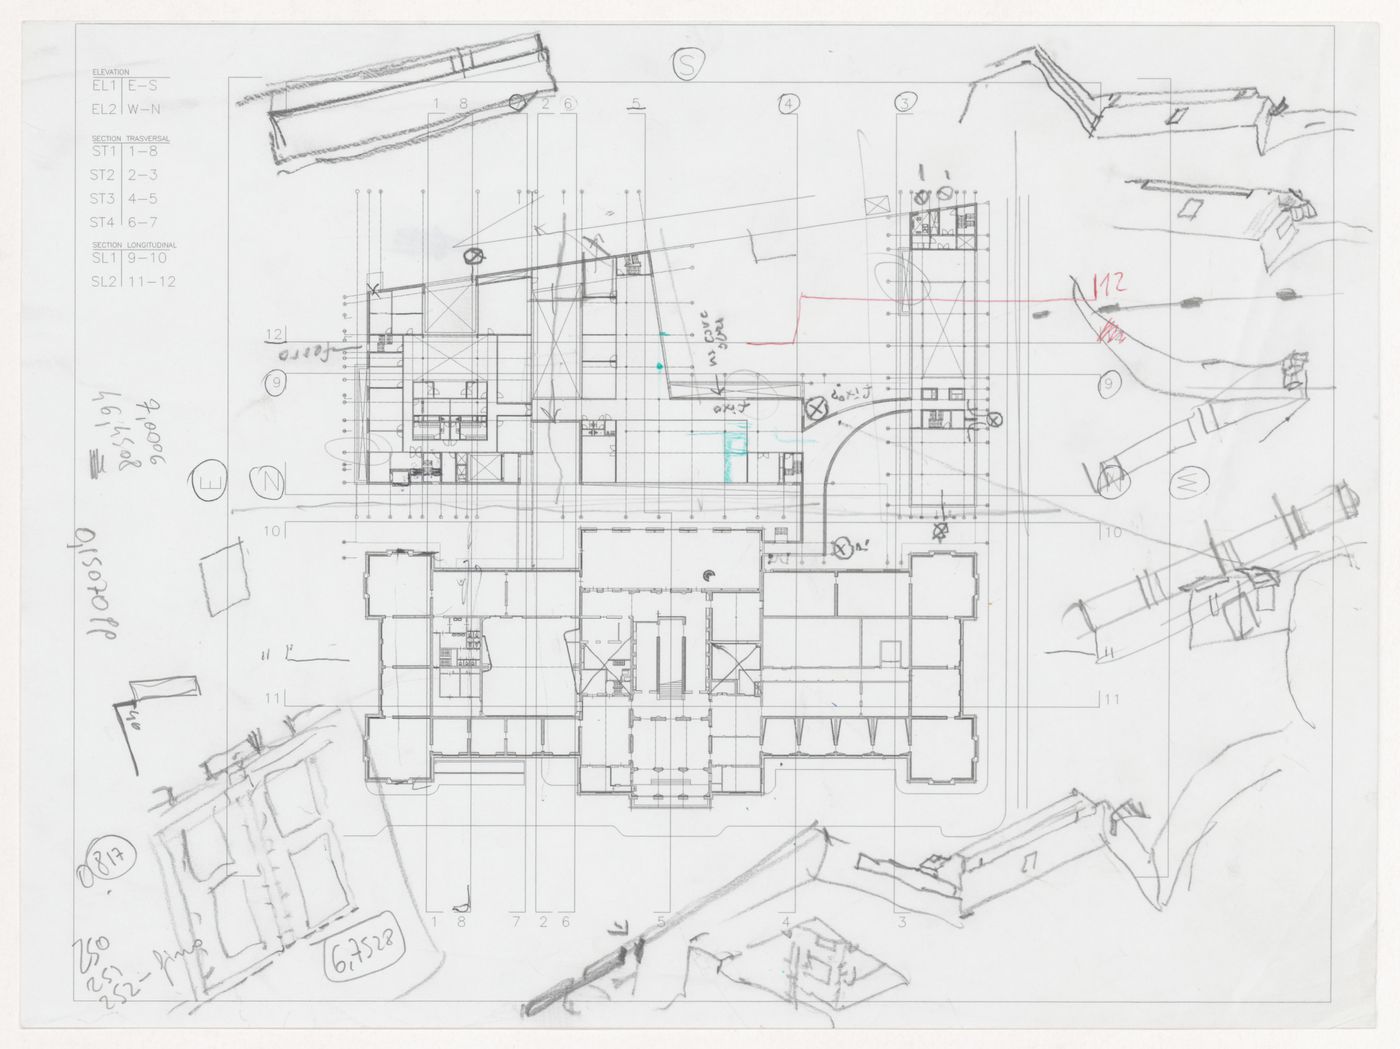 Plan and sketches for Renovação e extensão do Museu Stedelijk [Restoration and extension of Stedelijk Museum], Amsterdam